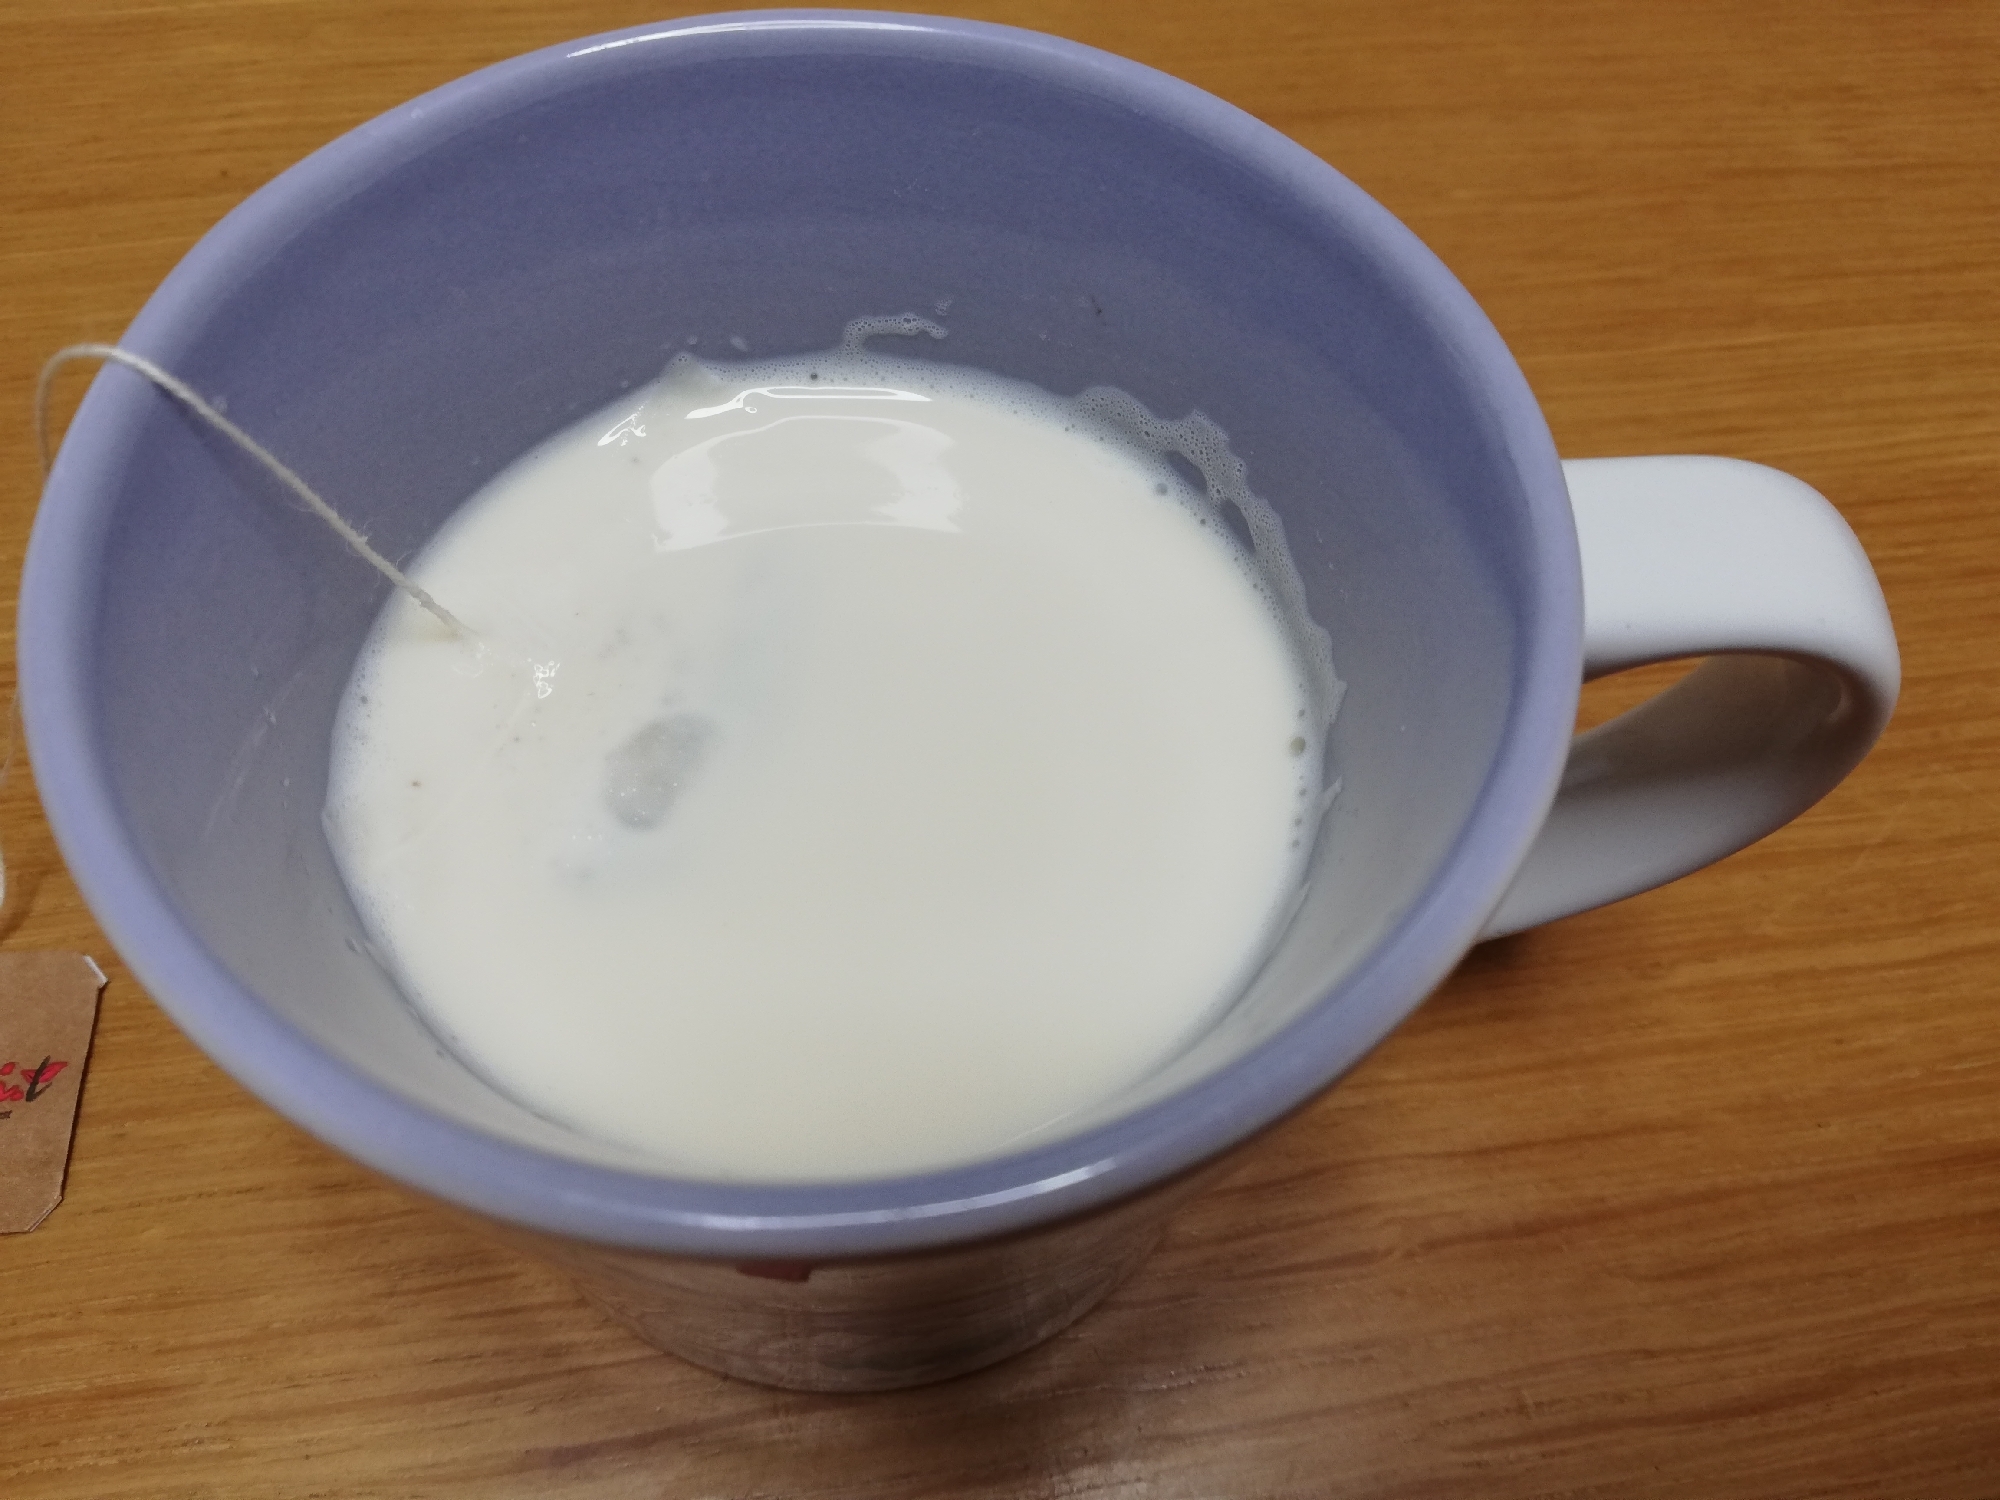 紅茶バニラ風味のホットミルク